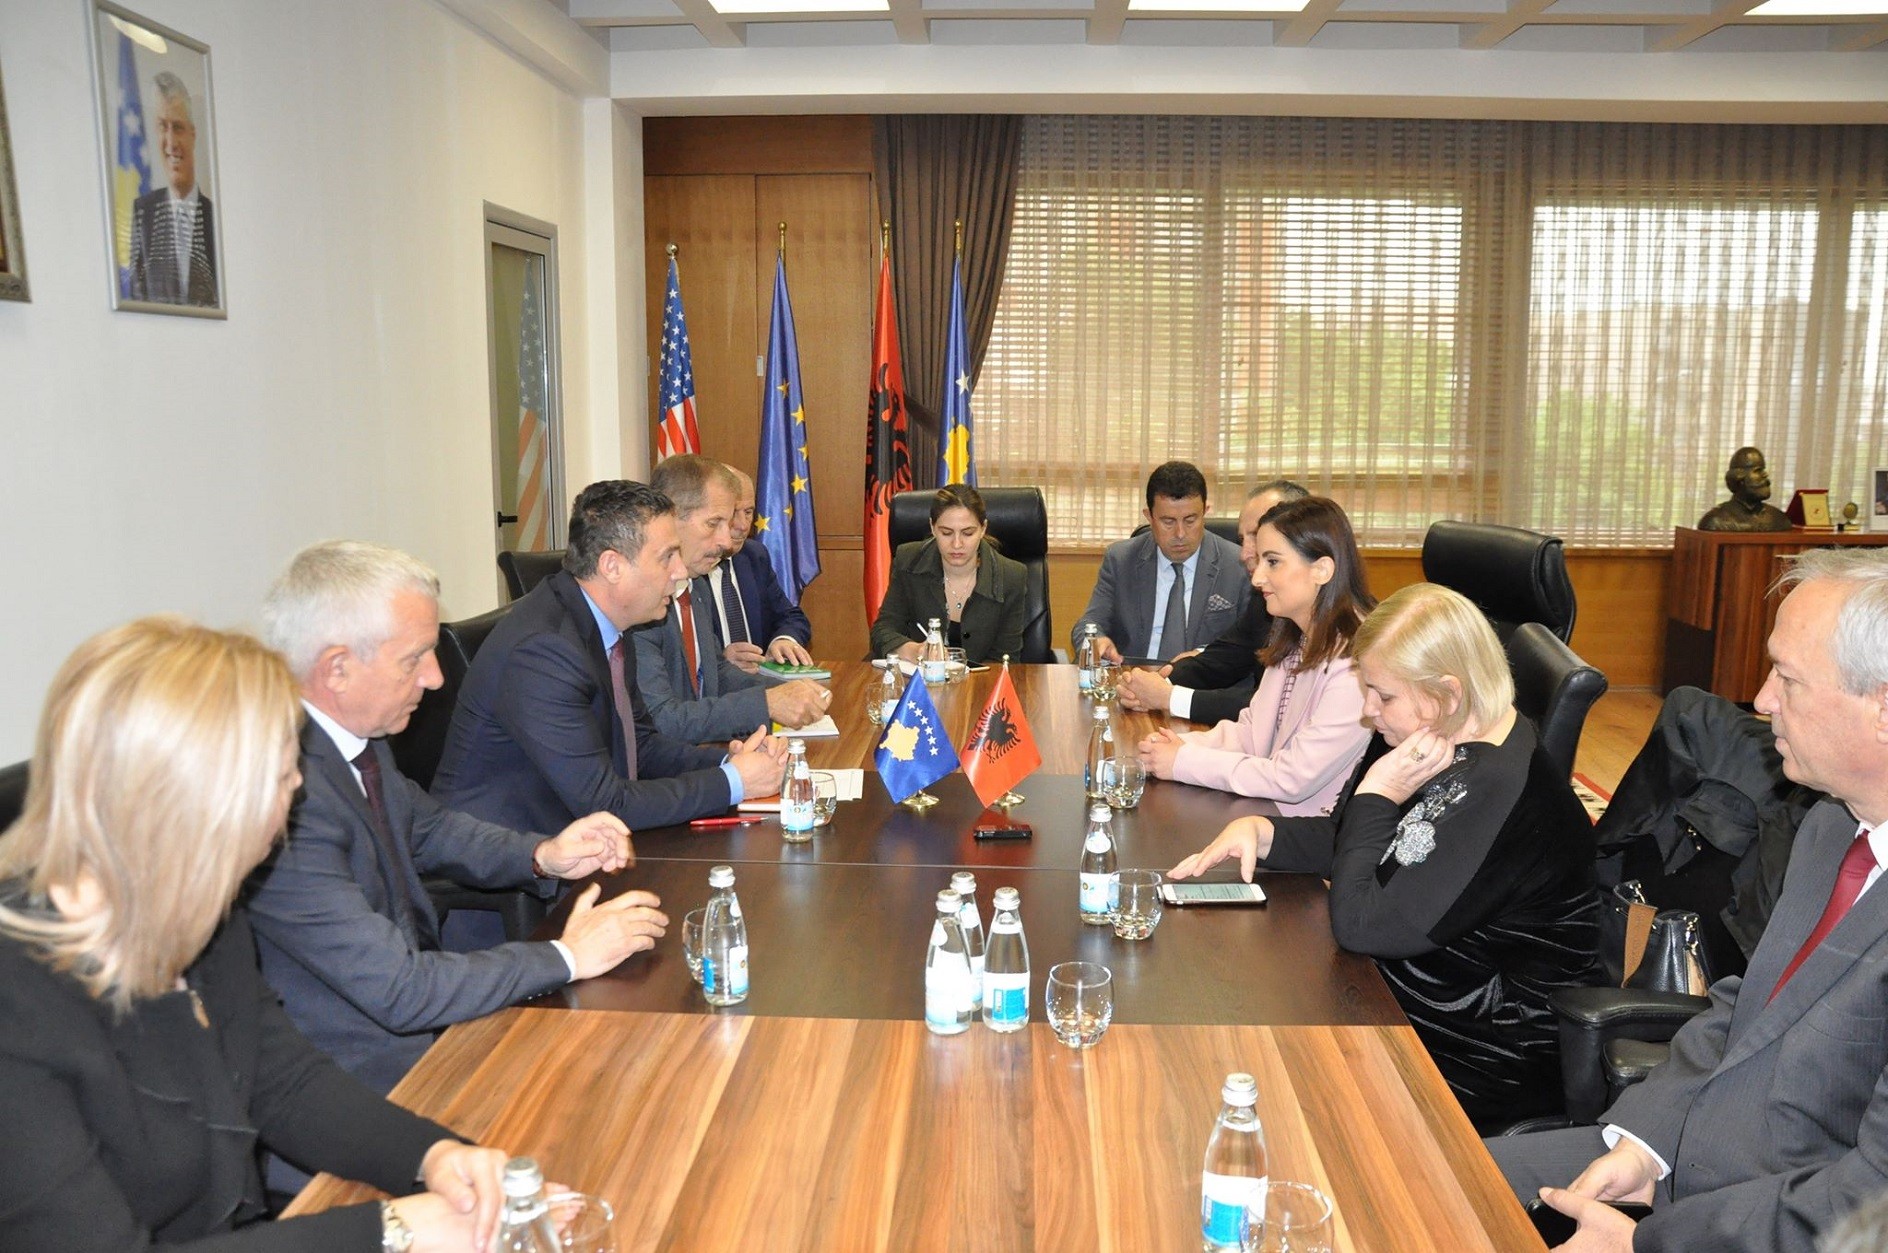 Kërkohet avancimi i bashkëpunimit në arsim mes Kosovës dhe Shqipërisë